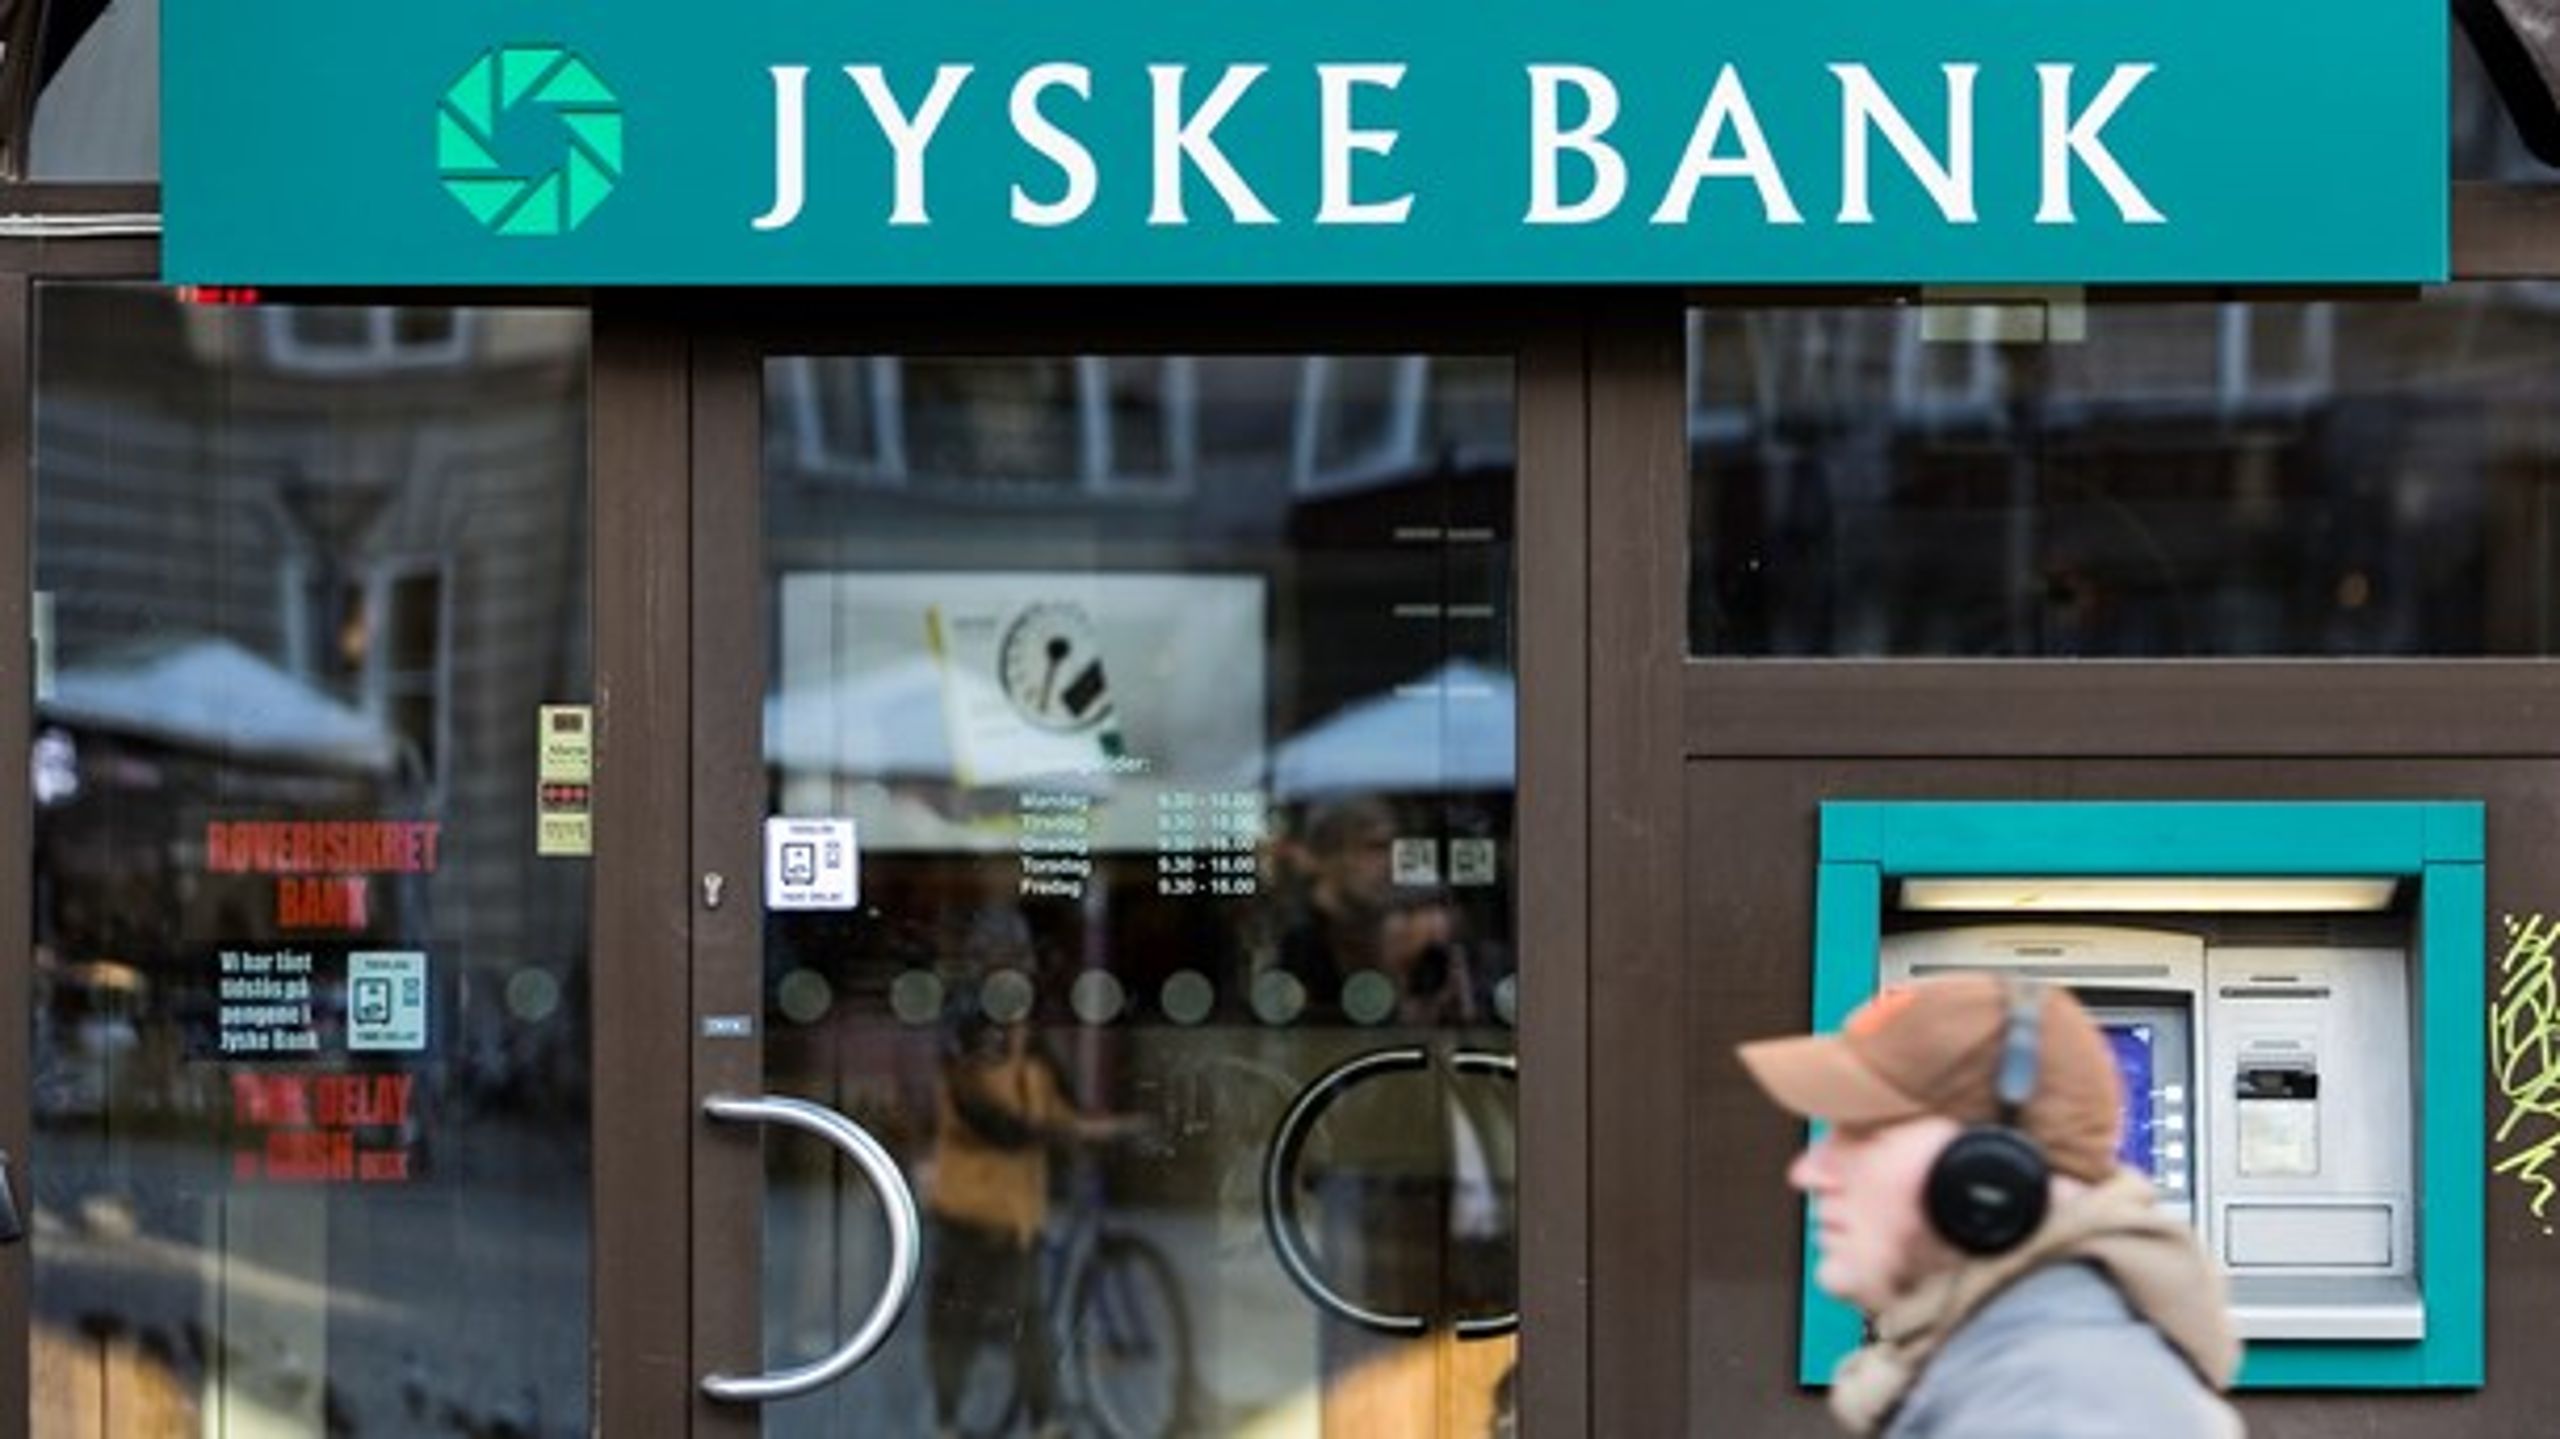 Jyske Bank var den første bank i Danmark, der indførte negative indlånsrenter, som en stor del af befolkningen ønsker at forbyde.